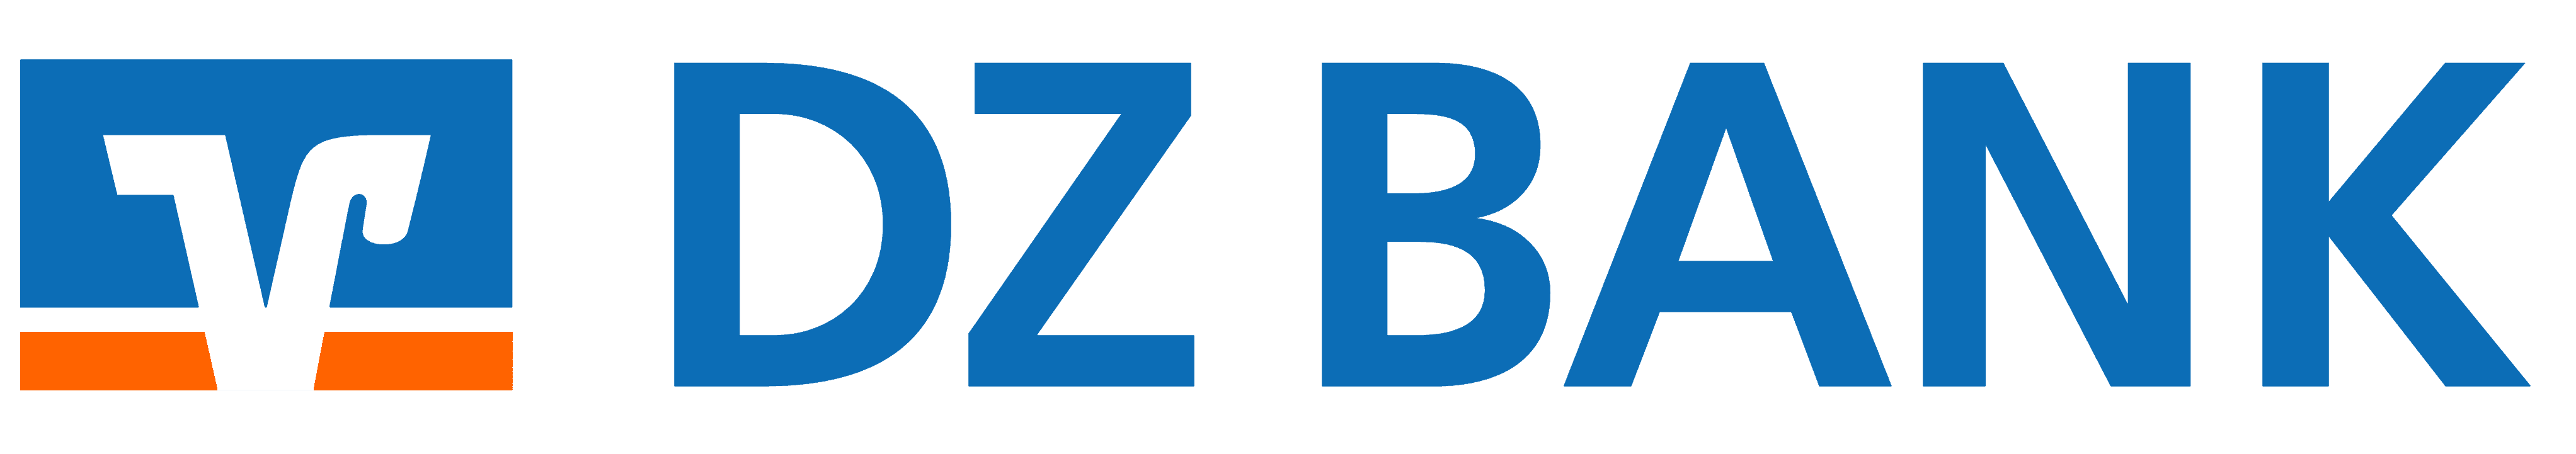 DZHYP Logo